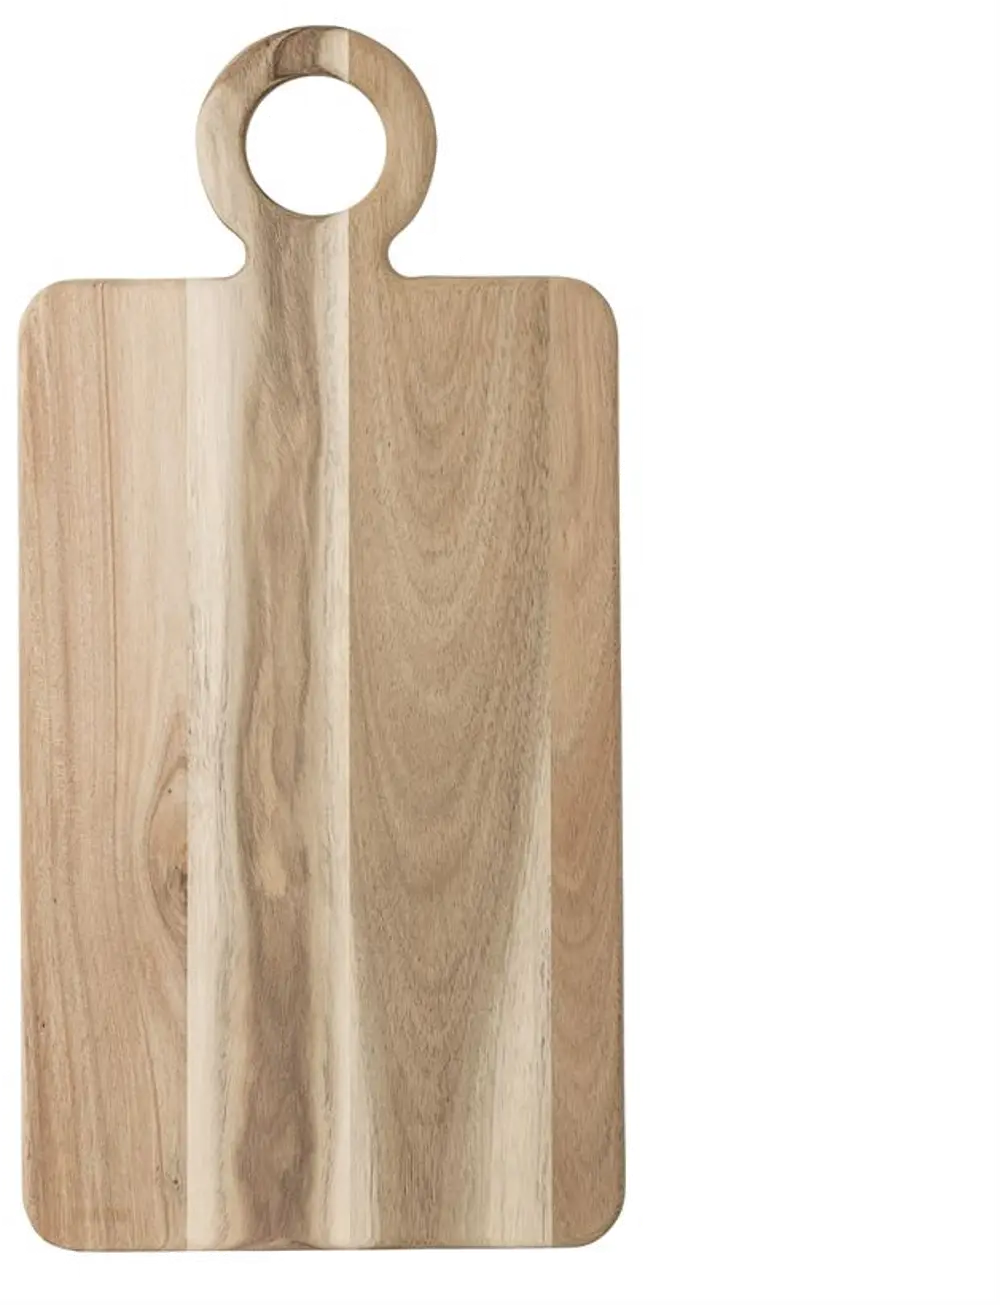 A40147678 Acacia Wood Cutting Board Tray-1